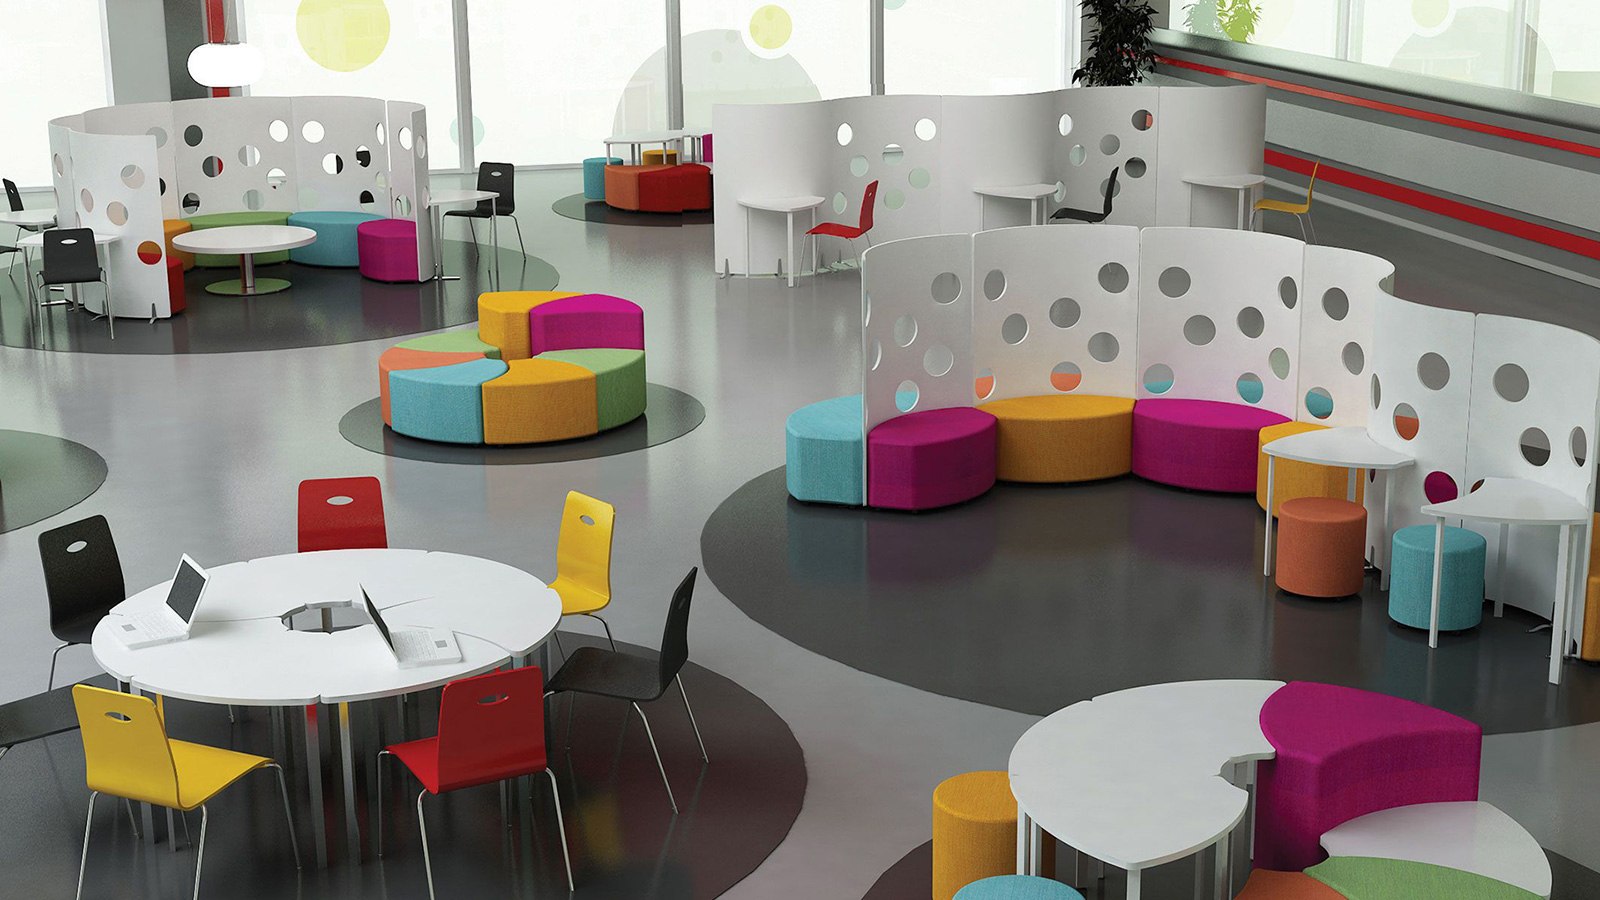 Модульные столы для школы. Современная мебель для школы. Стол для коворкинга. Модульная мебель для коворкинга. Мебель для детского сада.